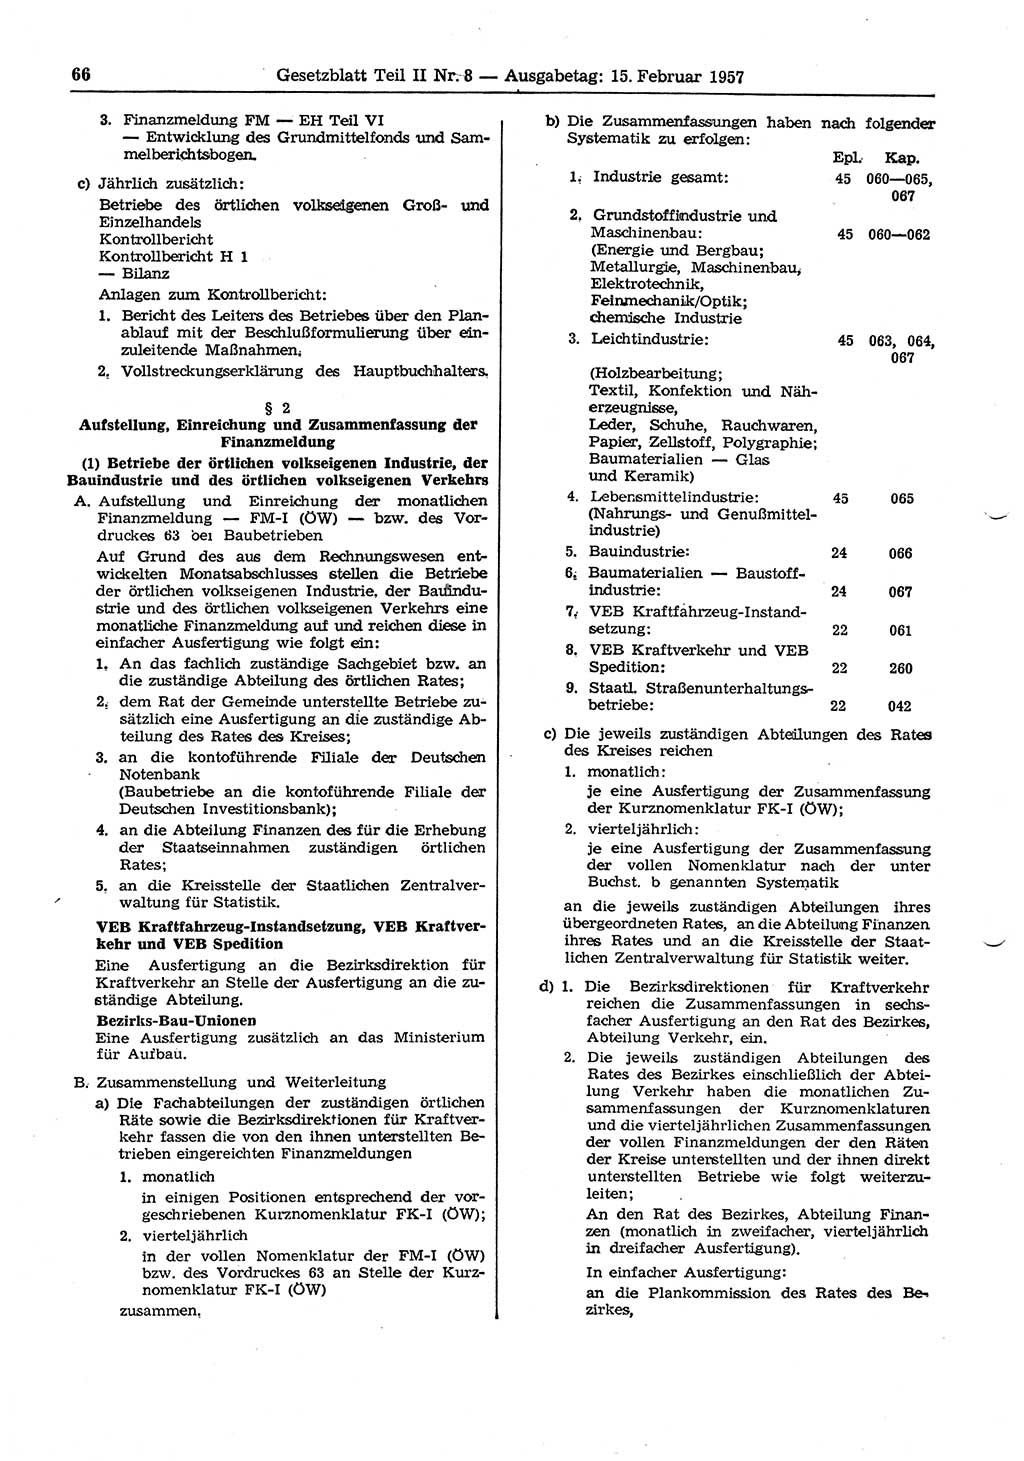 Gesetzblatt (GBl.) der Deutschen Demokratischen Republik (DDR) Teil ⅠⅠ 1957, Seite 66 (GBl. DDR ⅠⅠ 1957, S. 66)